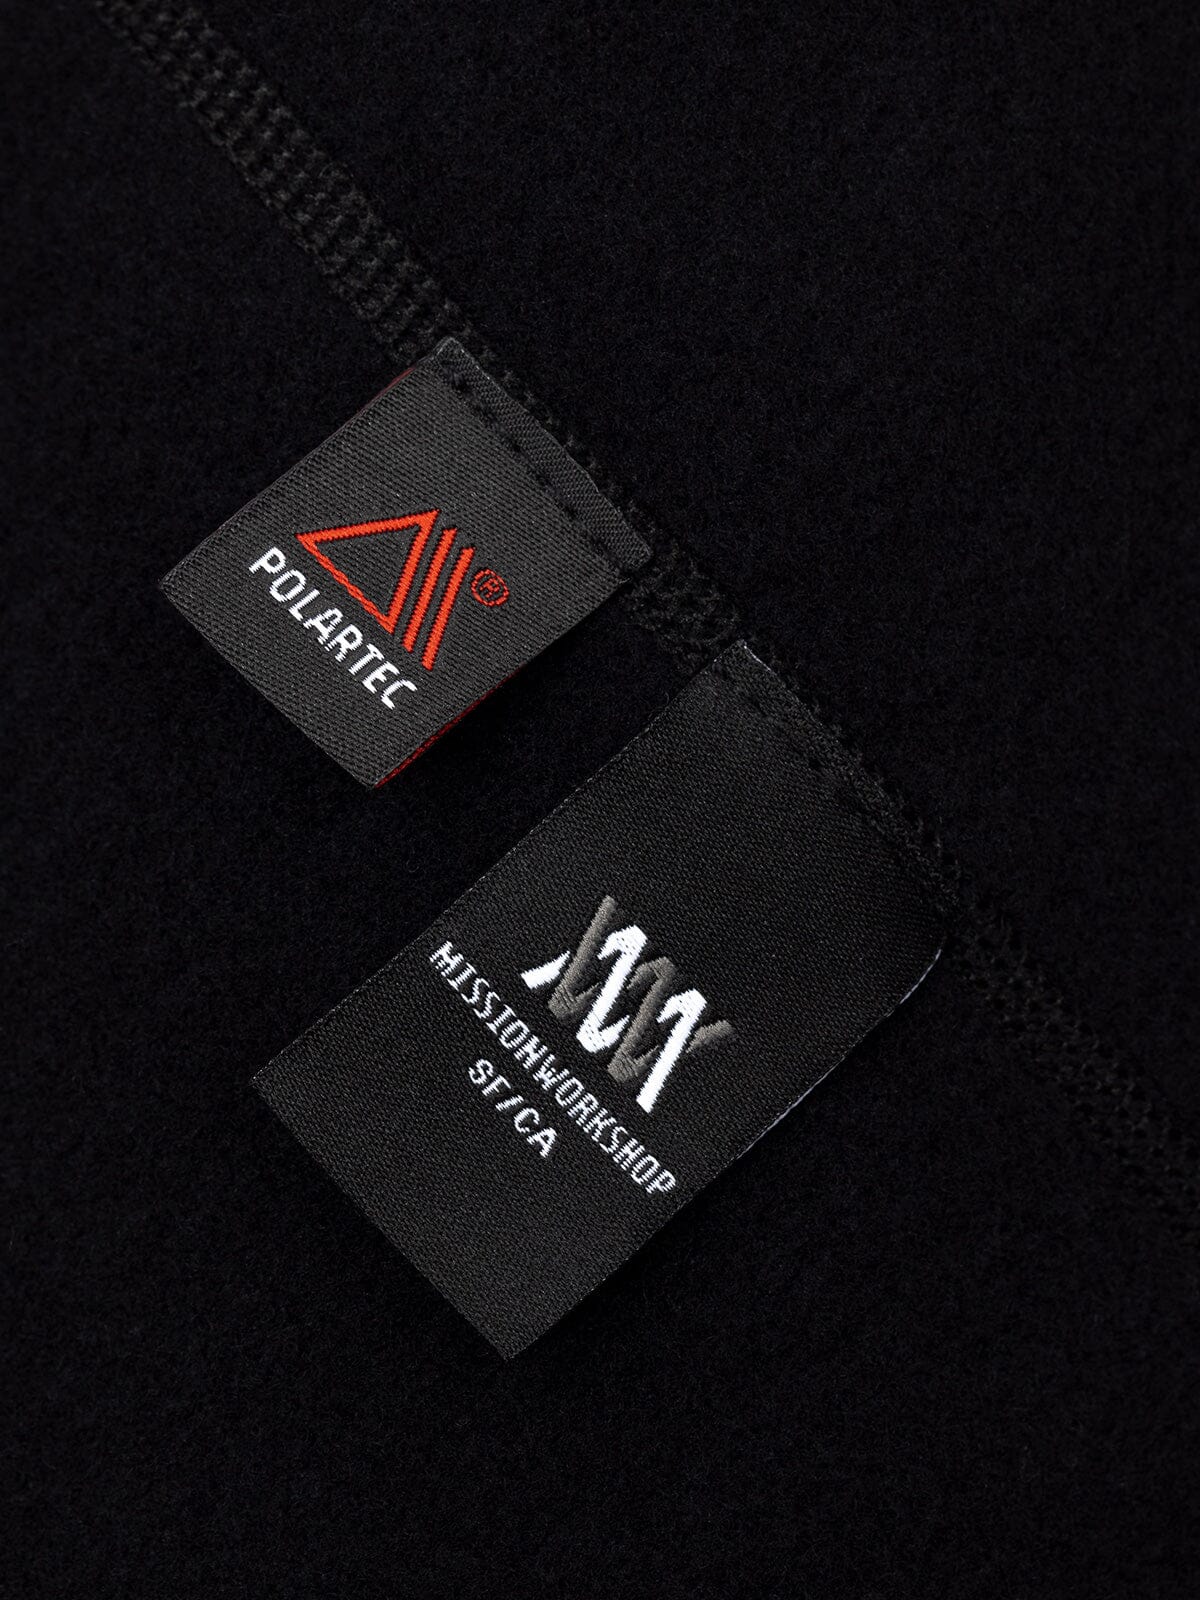 Mason : Power Wool by Mission Workshop - weerbestendige tassen & technische kleding - San Francisco & Los Angeles - gebouwd om te verdragen - voor altijd gegarandeerd